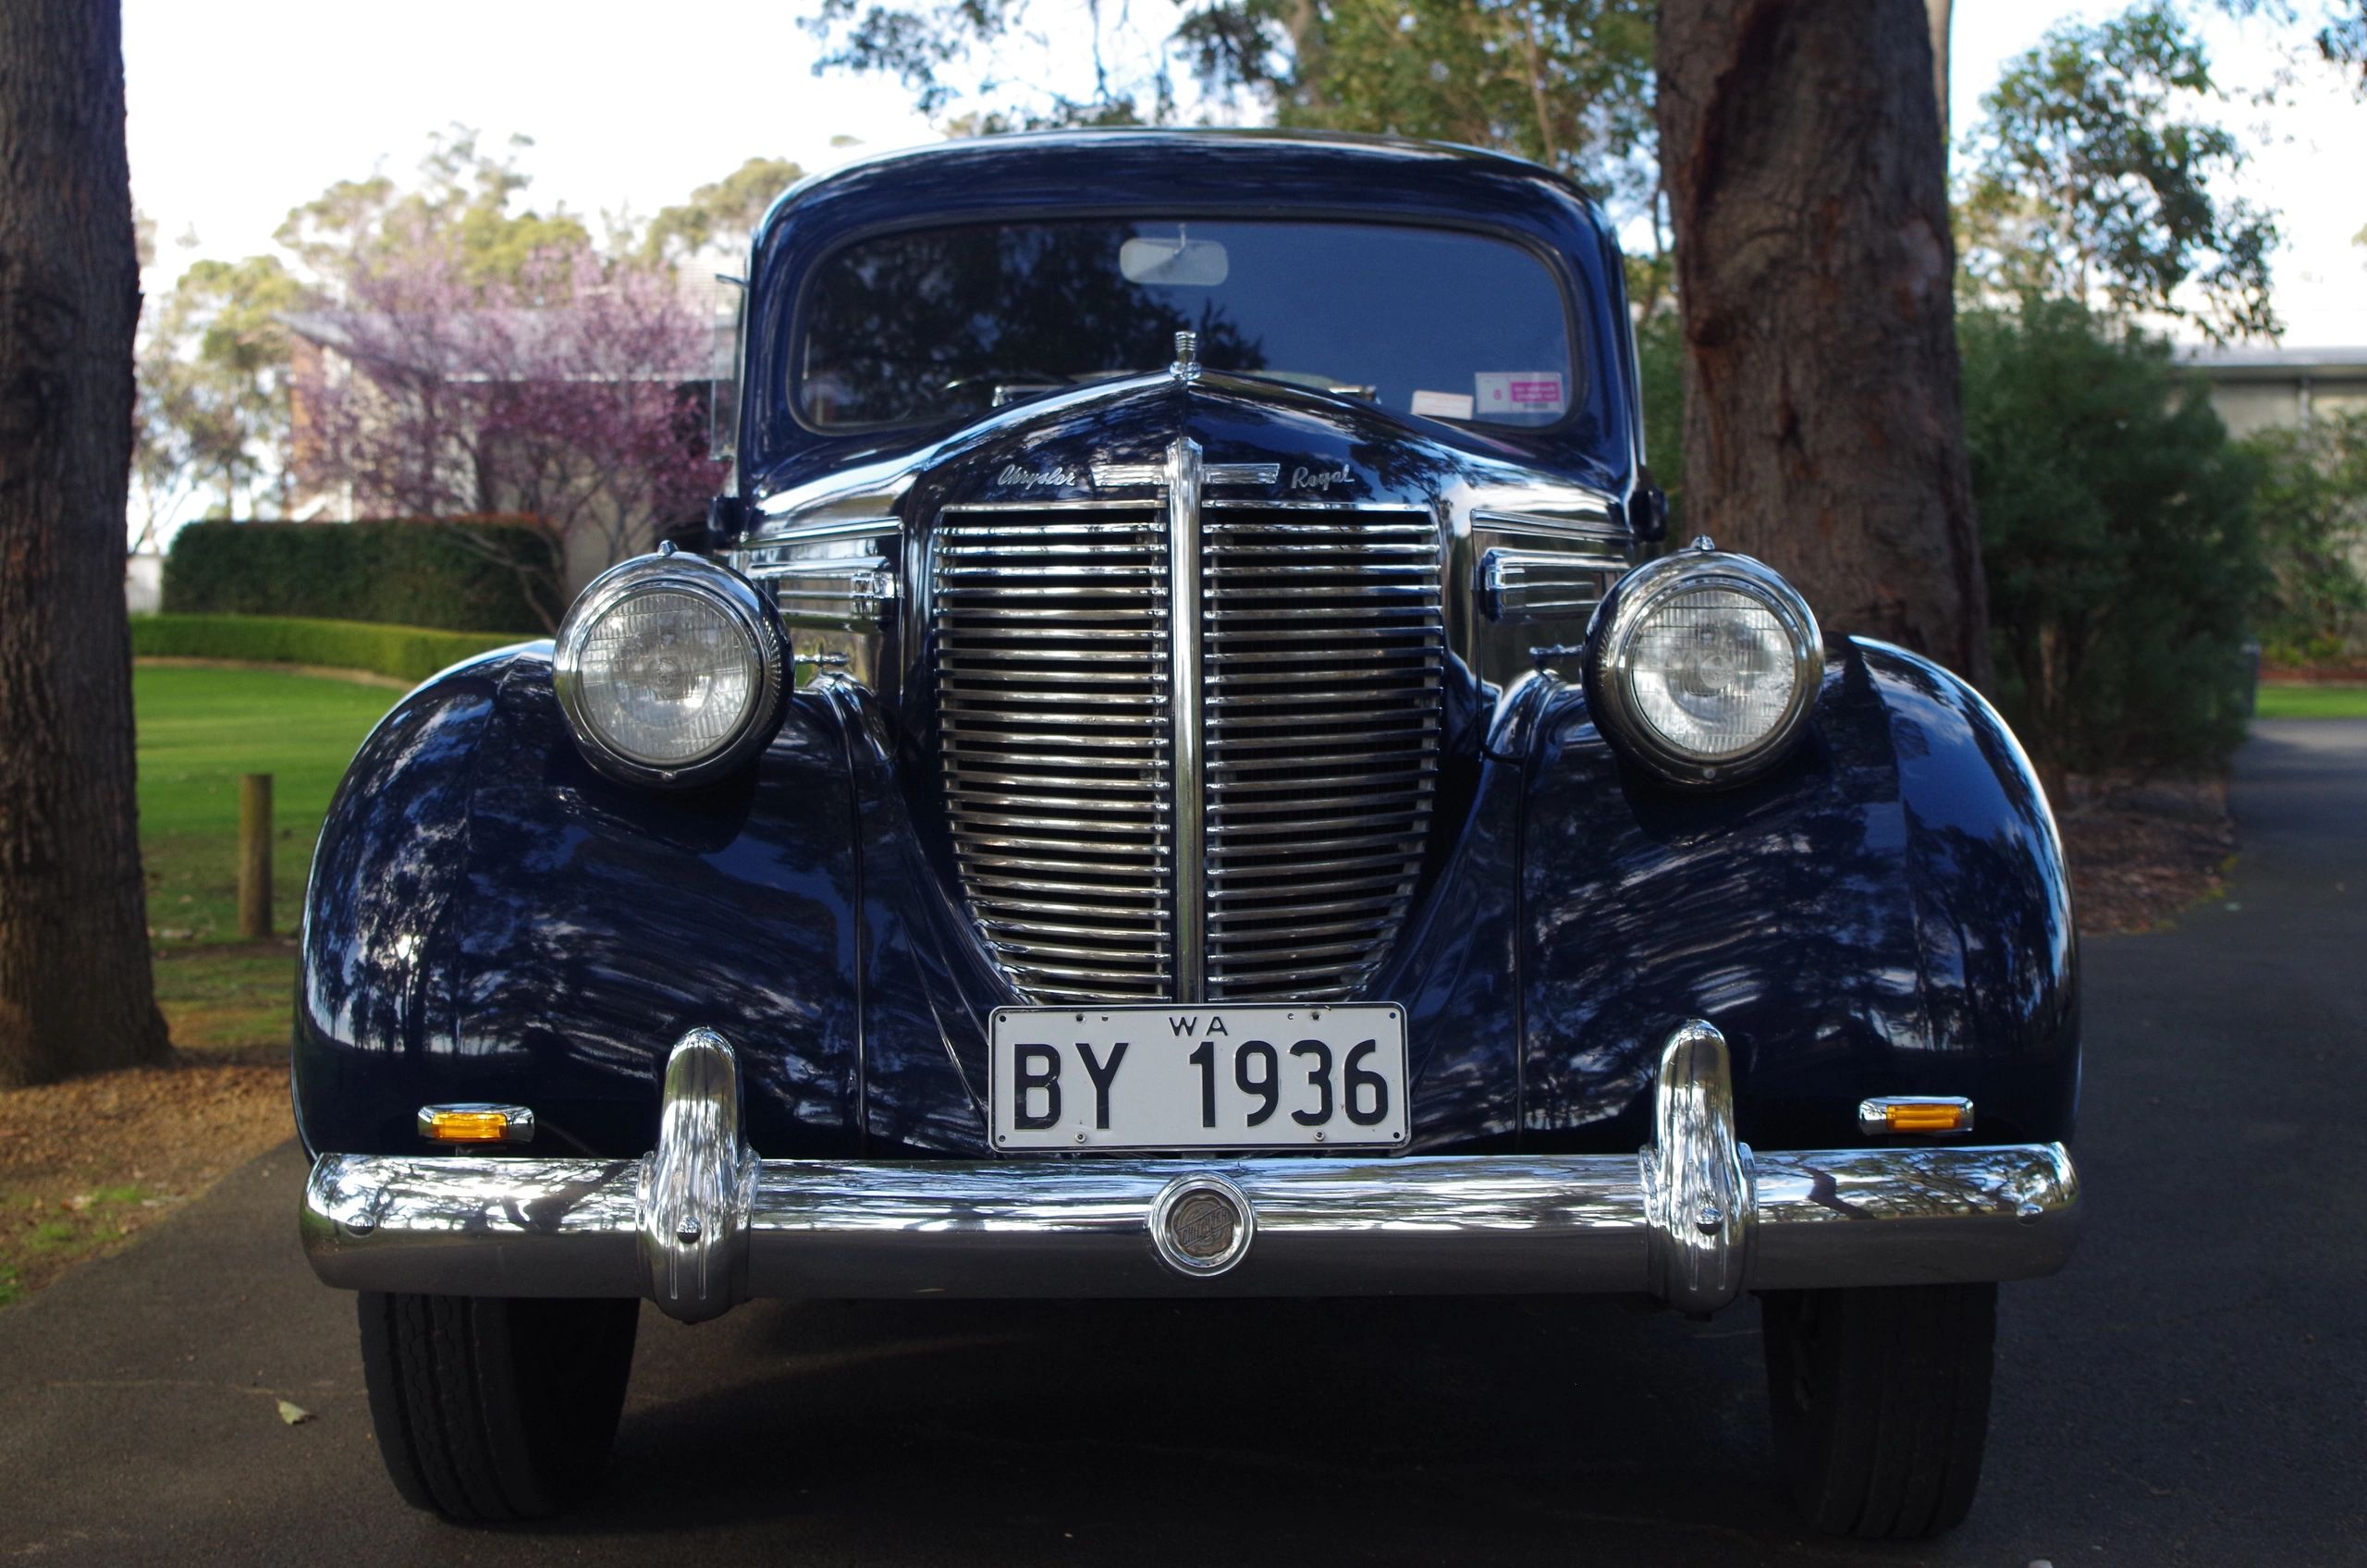 Meet Nellie, a 1938 Chrysler Royal extended model 7 seat passenger sedan